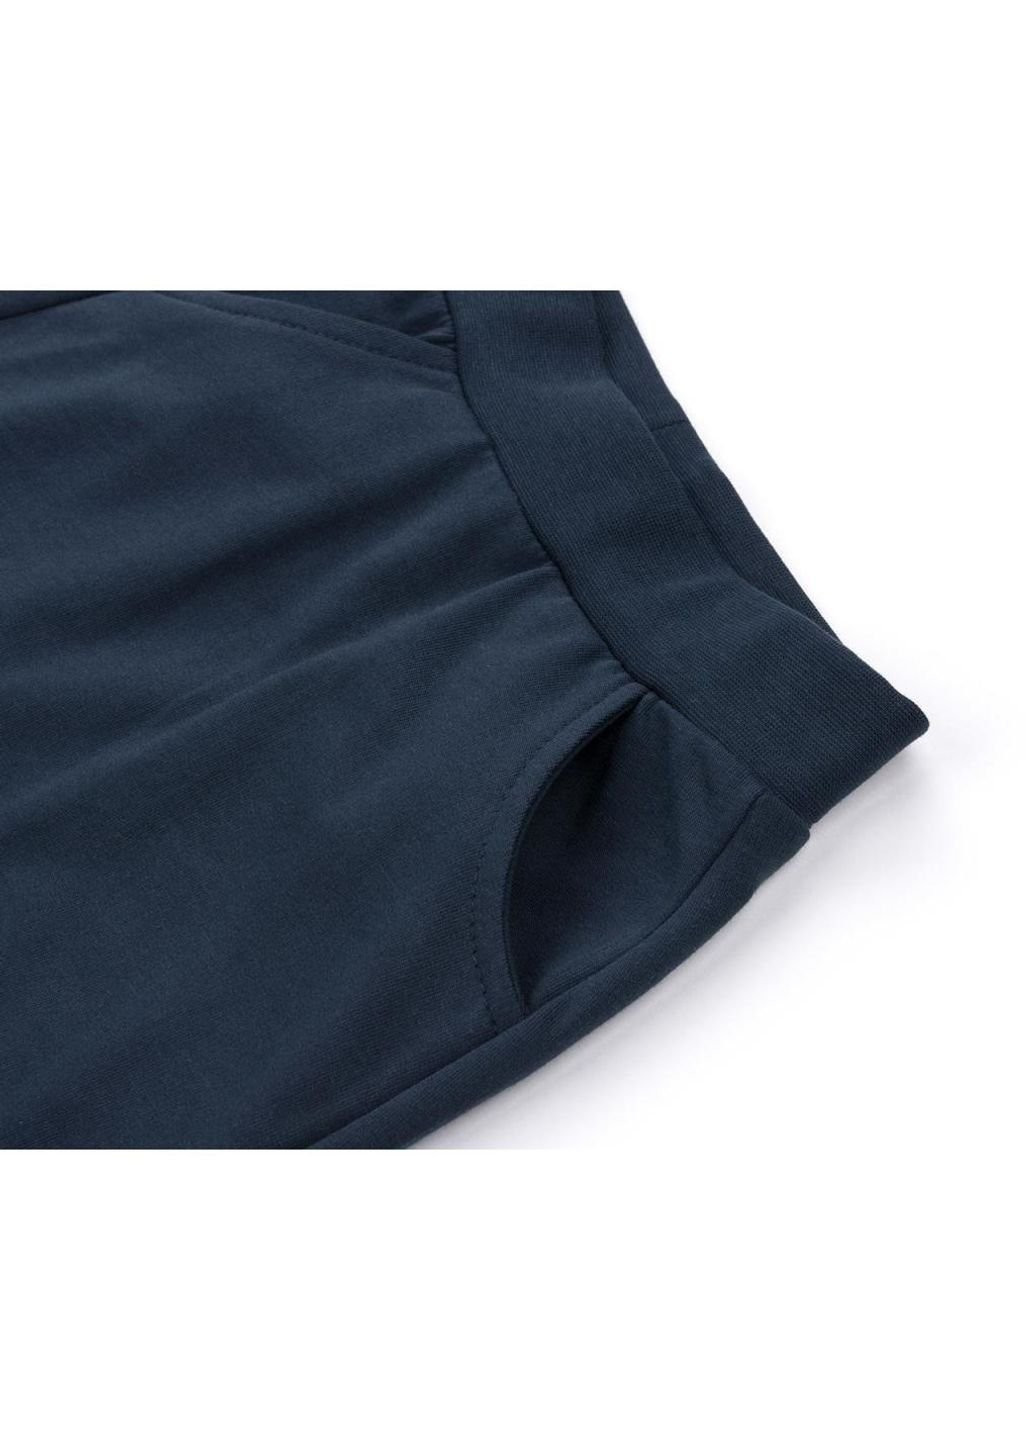 Голубой летний костюм десткий с карманчиками (10234-104g-blue) Breeze